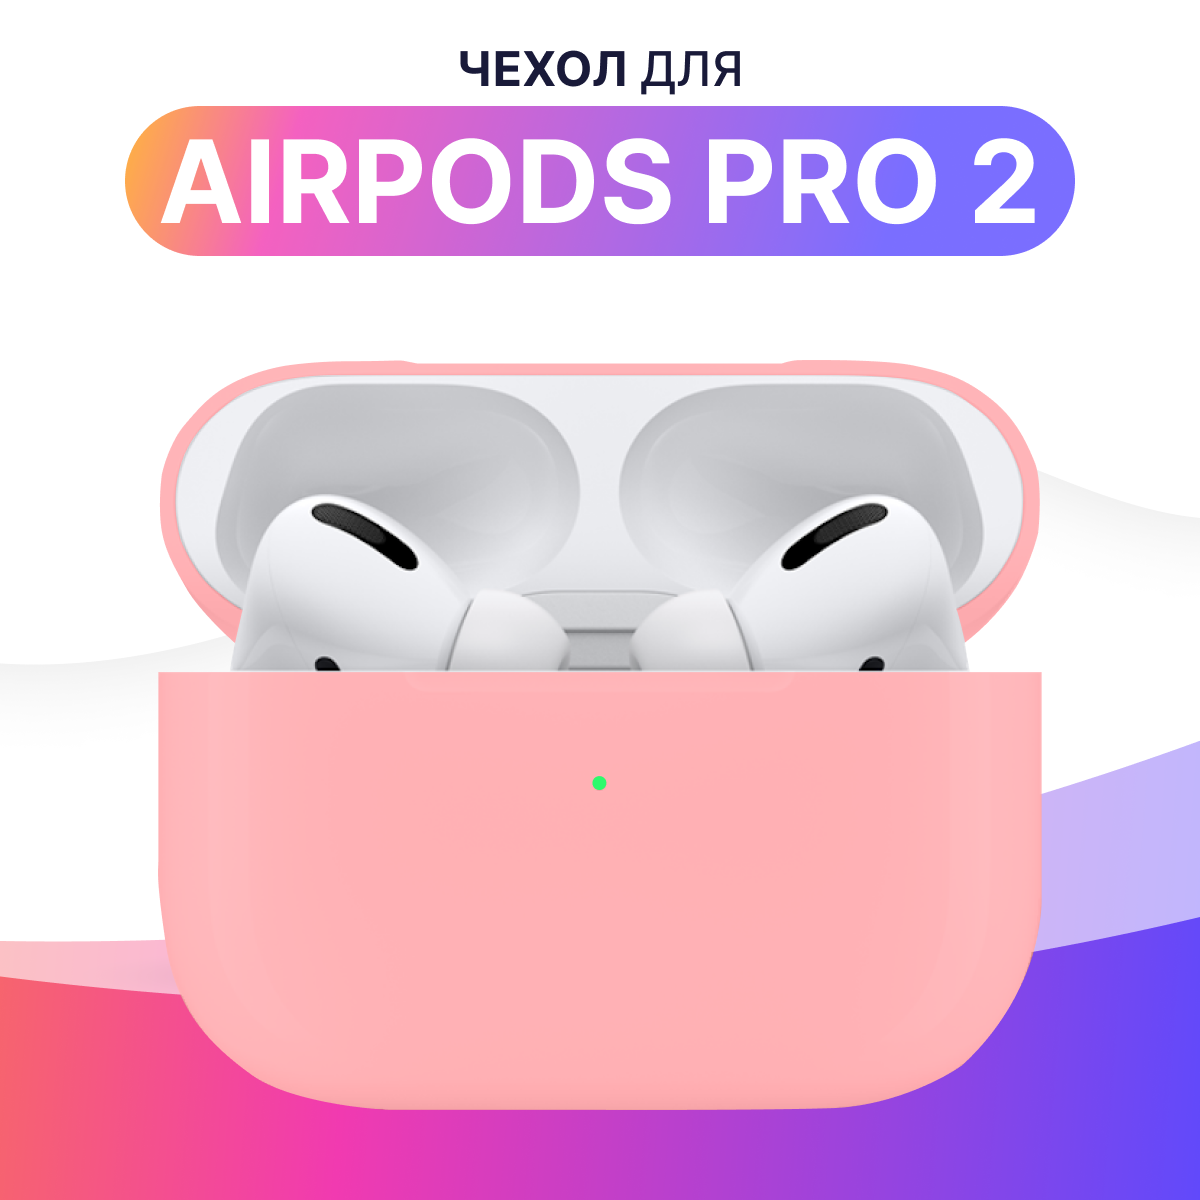 Силиконовый чехол для Apple AirPods Pro 2 / Защитный противоударный кейс для беспроводных наушников Эпл Аирподс Про 2 / Розовый